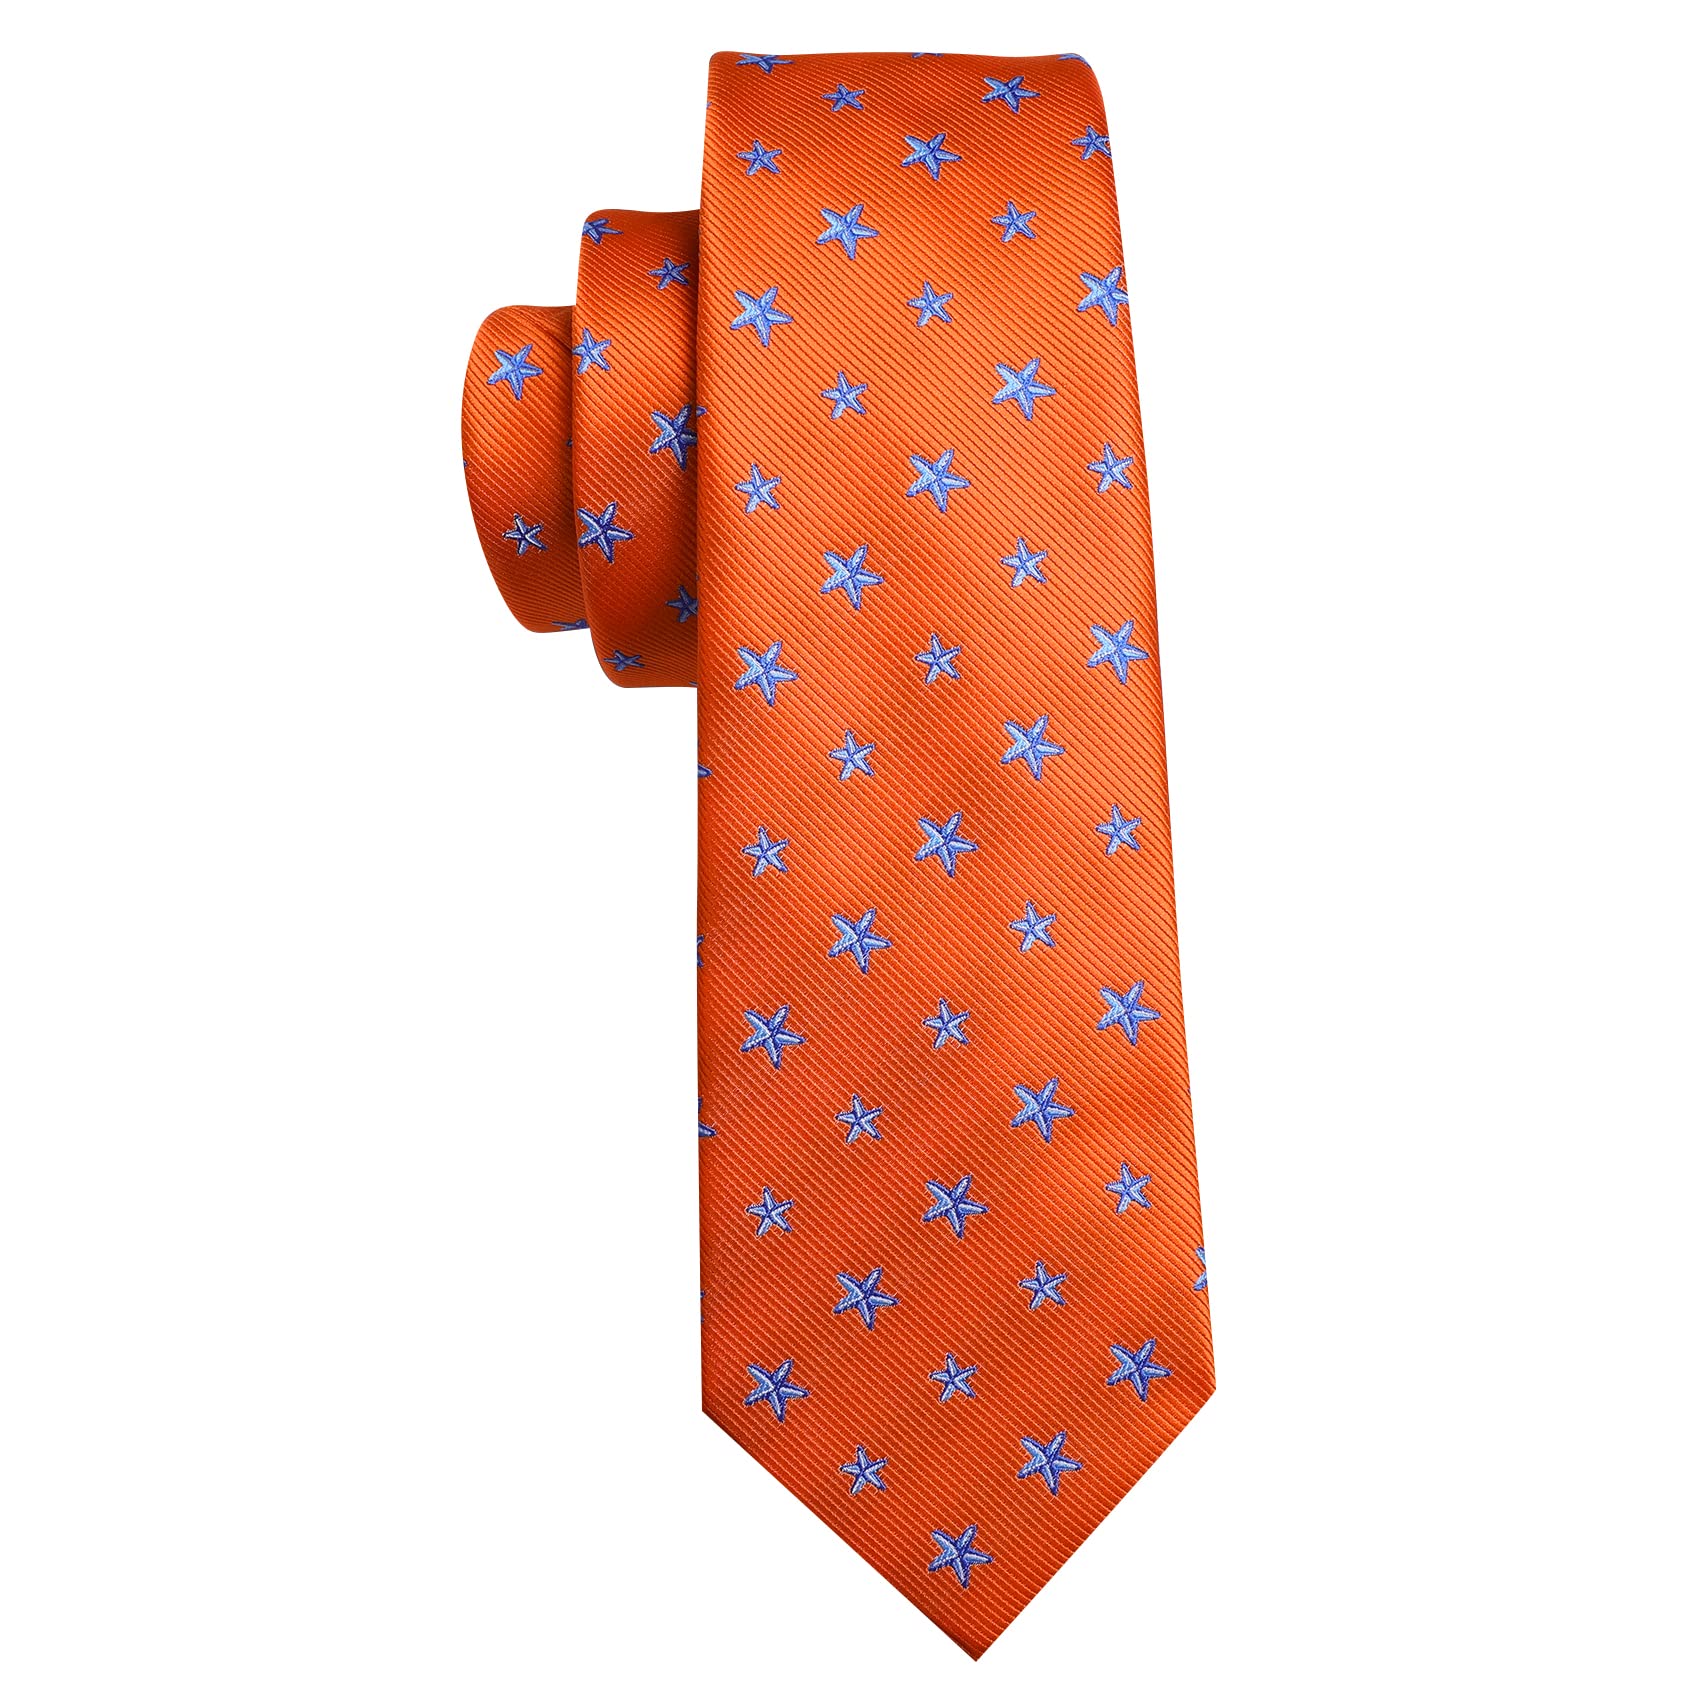 Barry.Wang Men's Orange Tie Set Wedding Pattern Necktie Pocket Square Cufflink Design Fashion Wedding